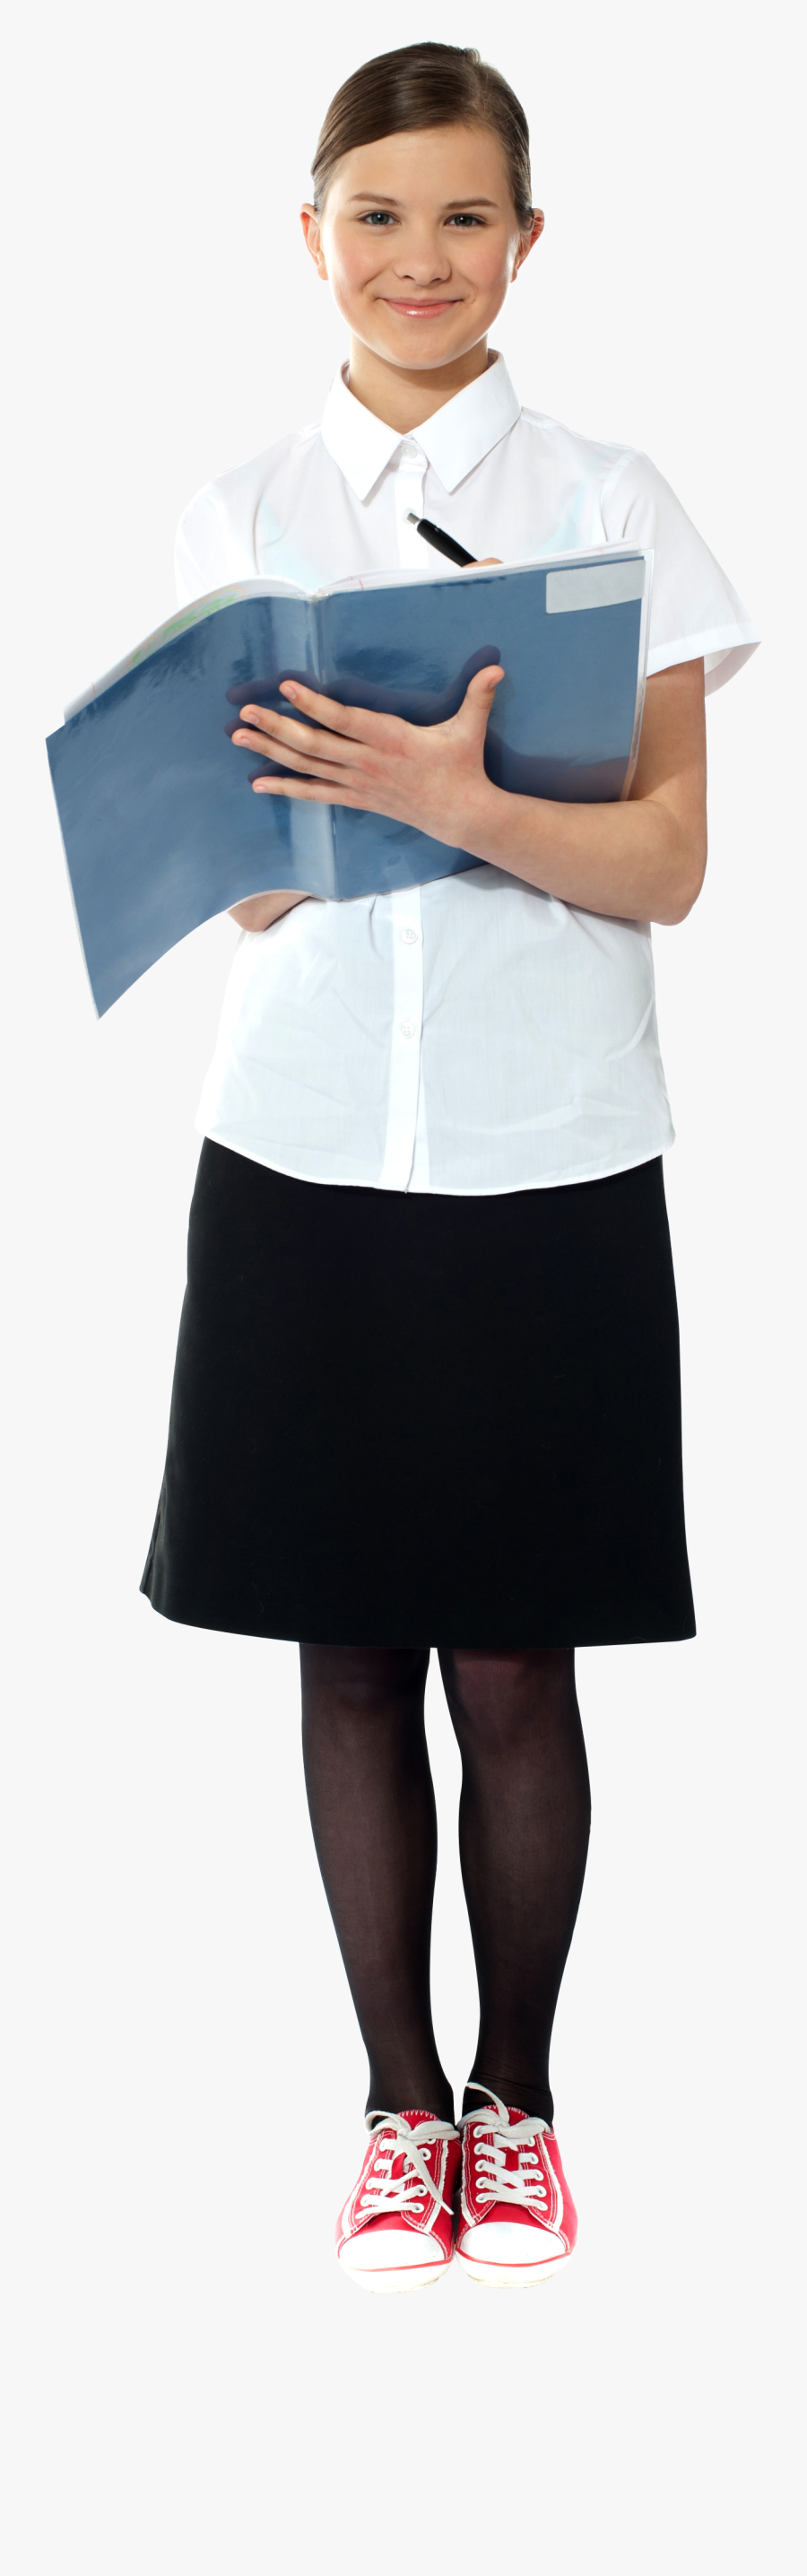 Transparent Nurse Uniform Clipart - Portable Network Graphics, Transparent Clipart